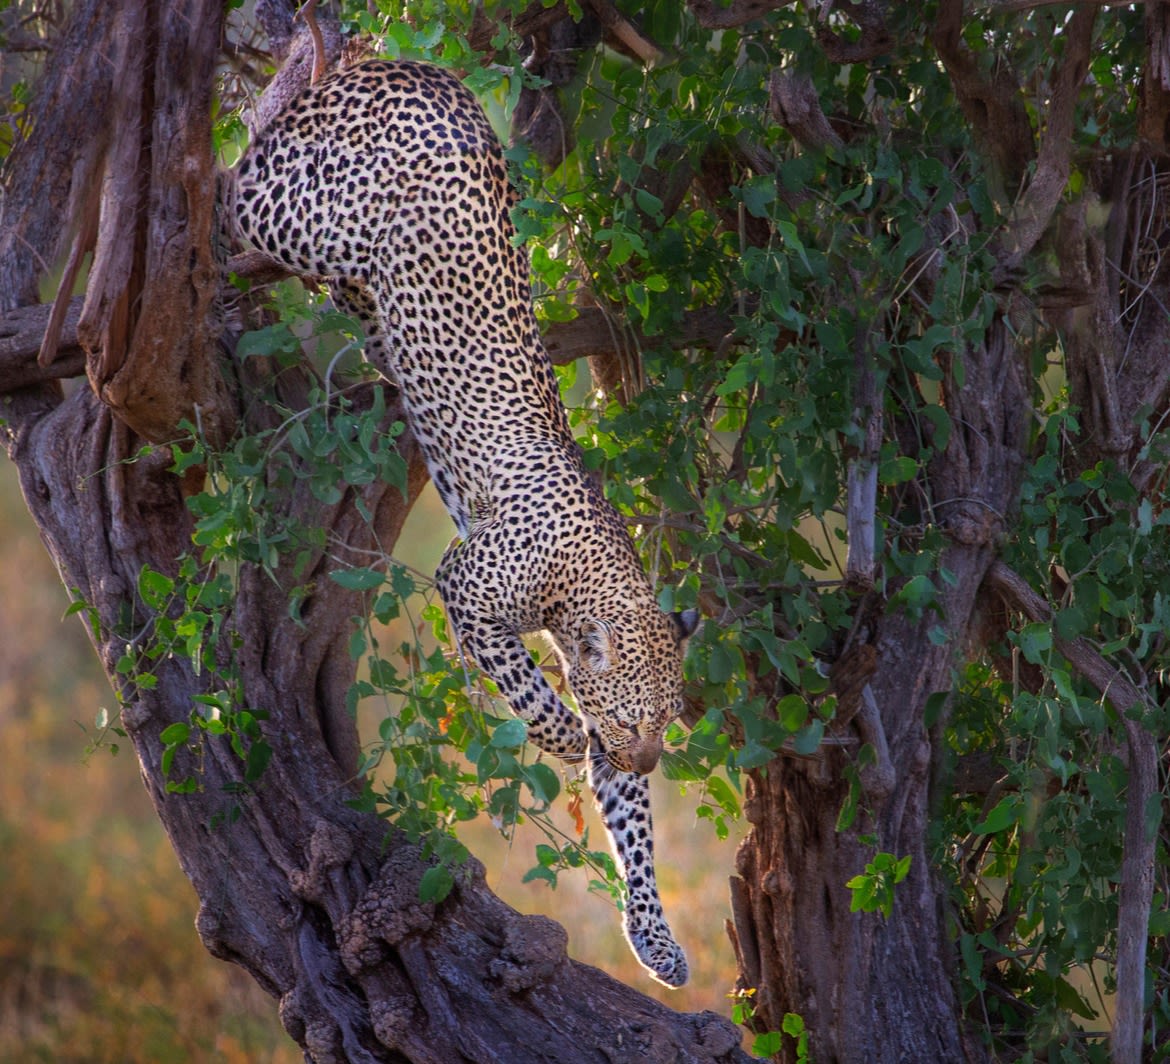  Leopard getting down the tree in Samburu, Kenya, Africa